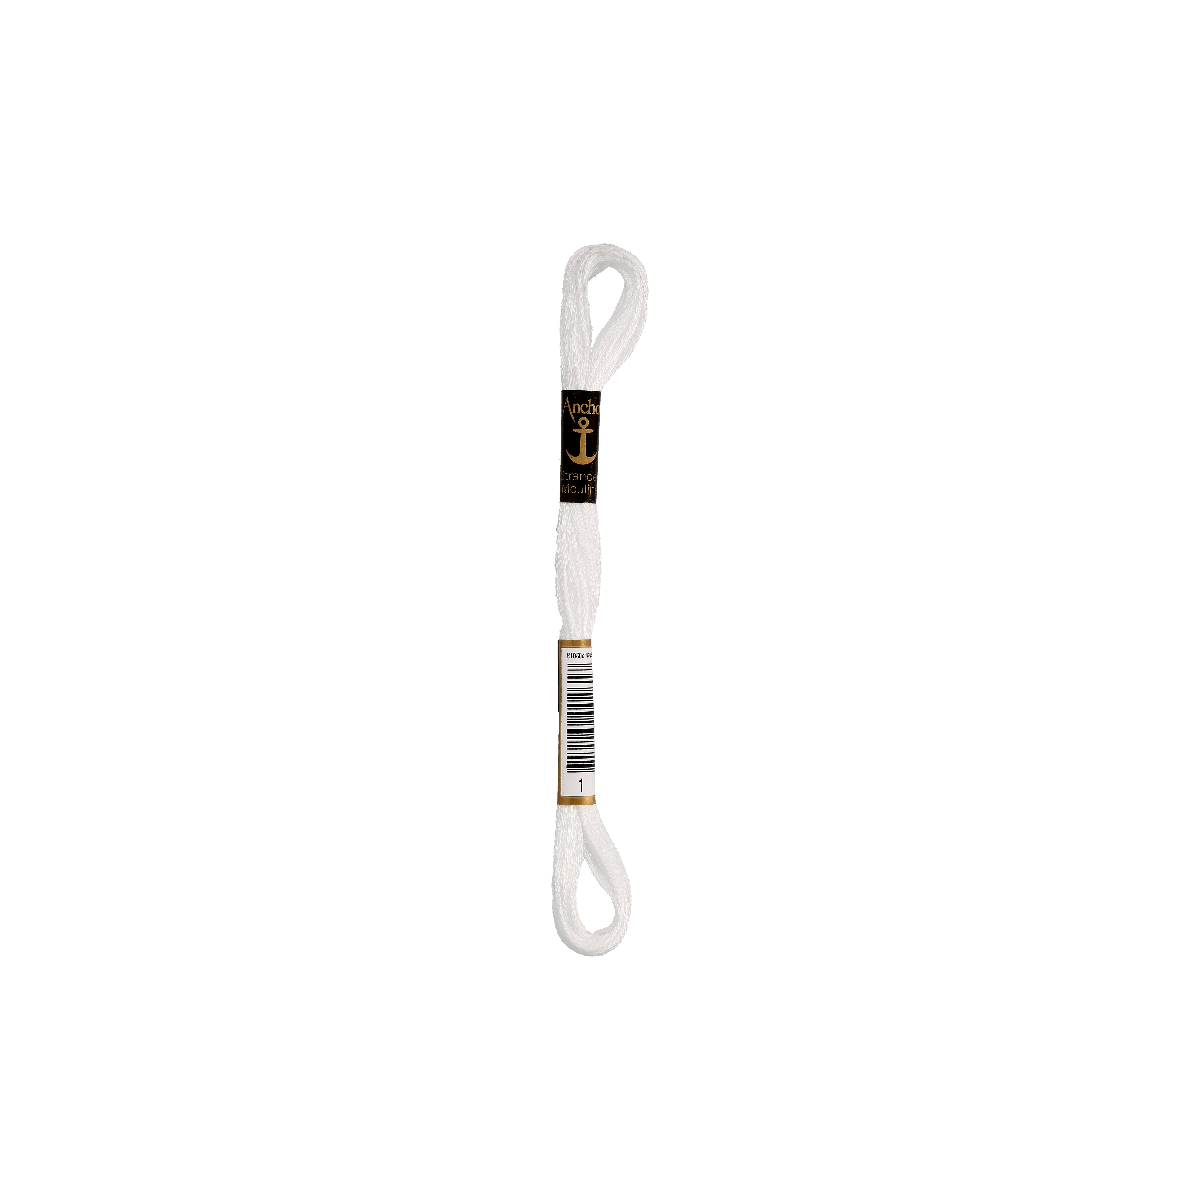 Anchor Sticktwist 8m, bianco alto, cotone, colore 01, 6 fili